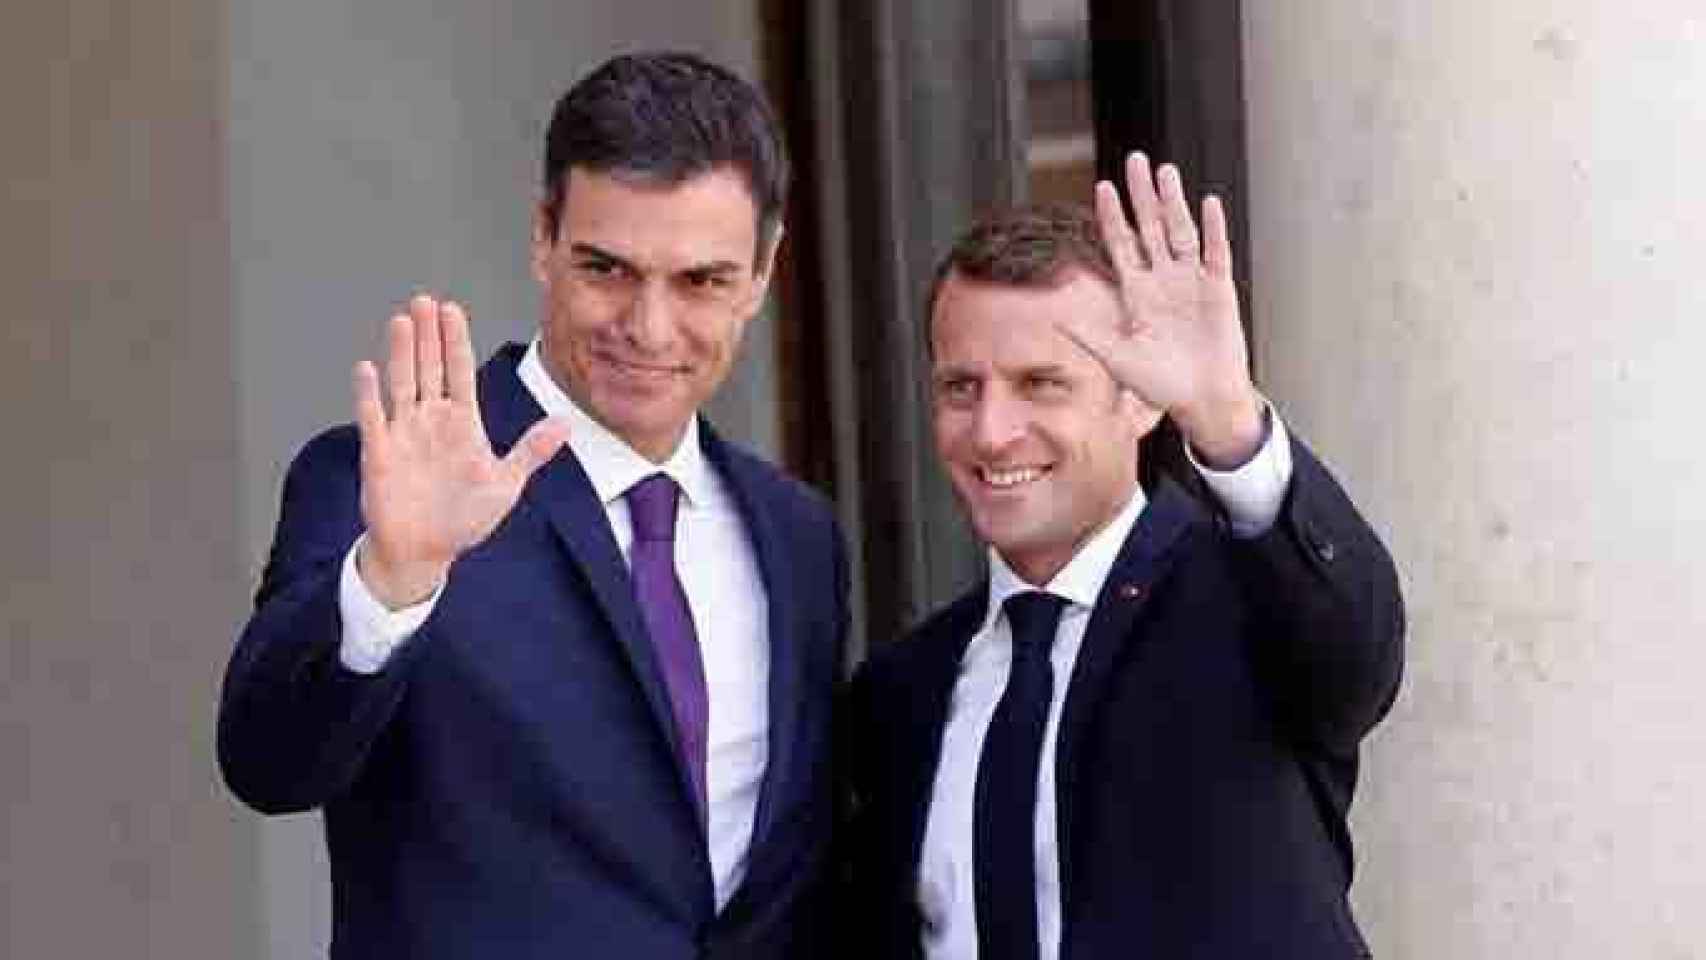 Pedro Sánchez (i) y Emmanuel Macron (d), cuyo gobierno se desmarcó del manifiesto 'procesista' de los senadores franceses, en una imagen de archivo / EFE